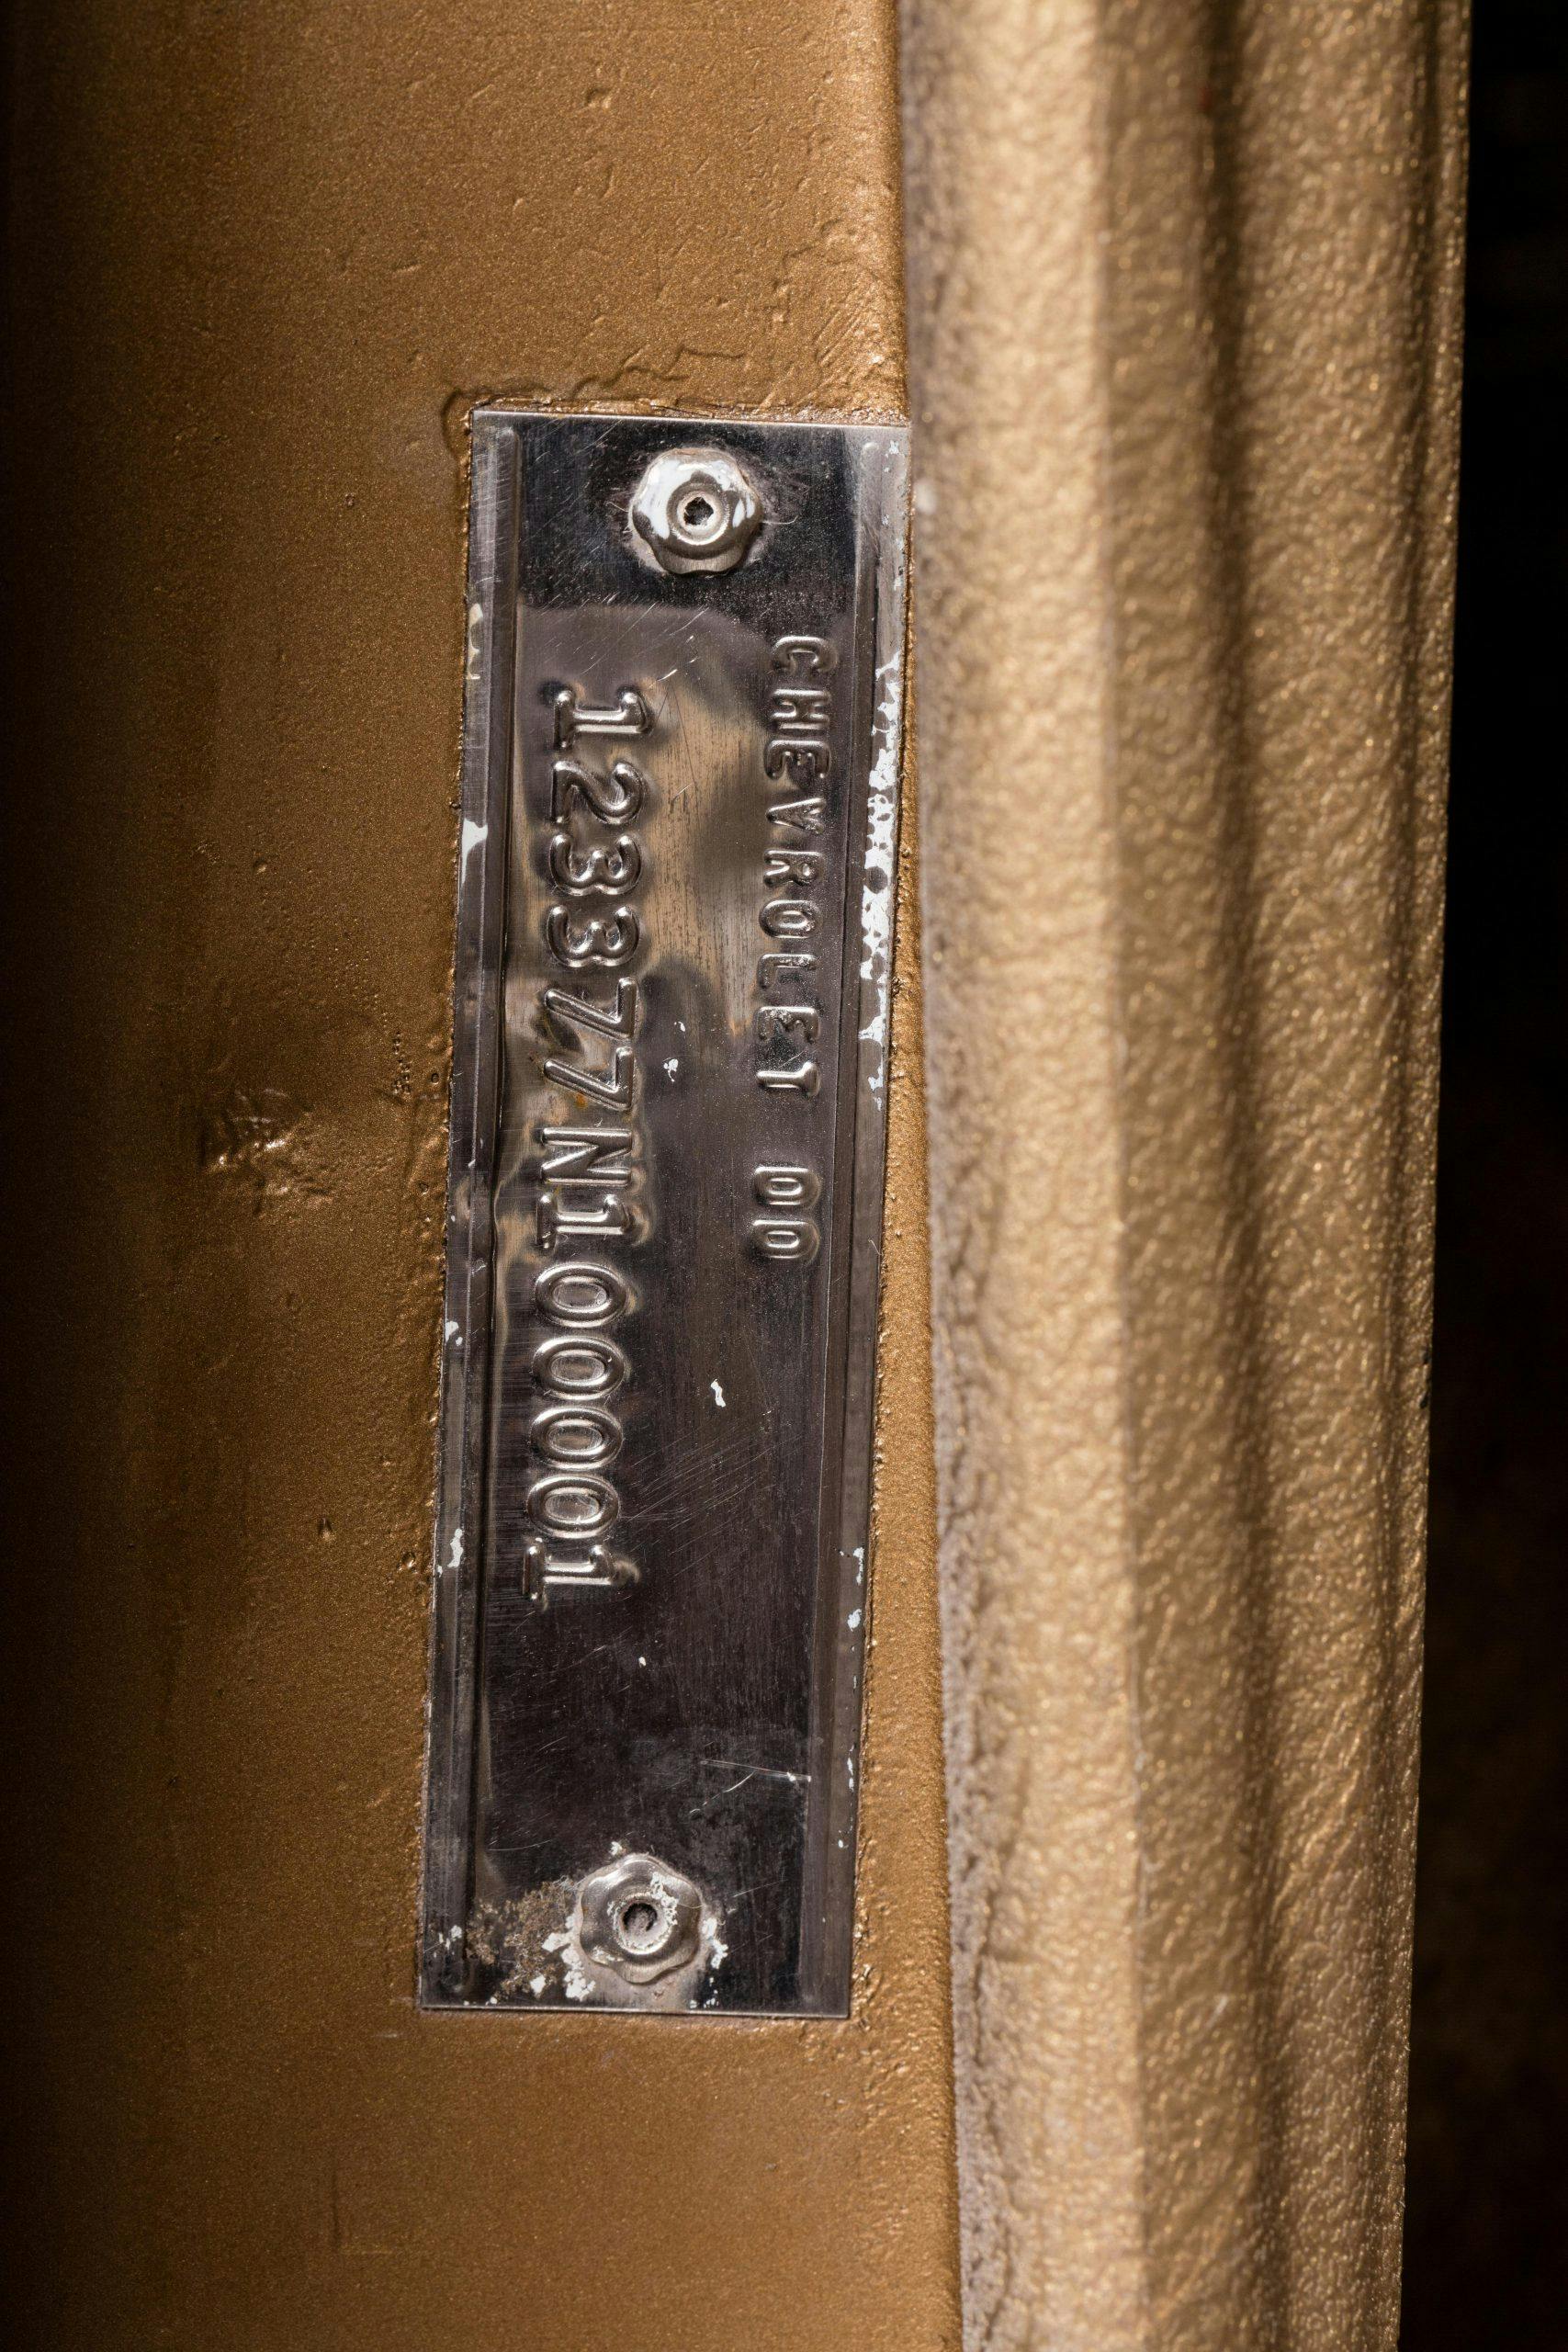 HVA - Chevrolet Camaro N100001 - Closeup VIN plate in door